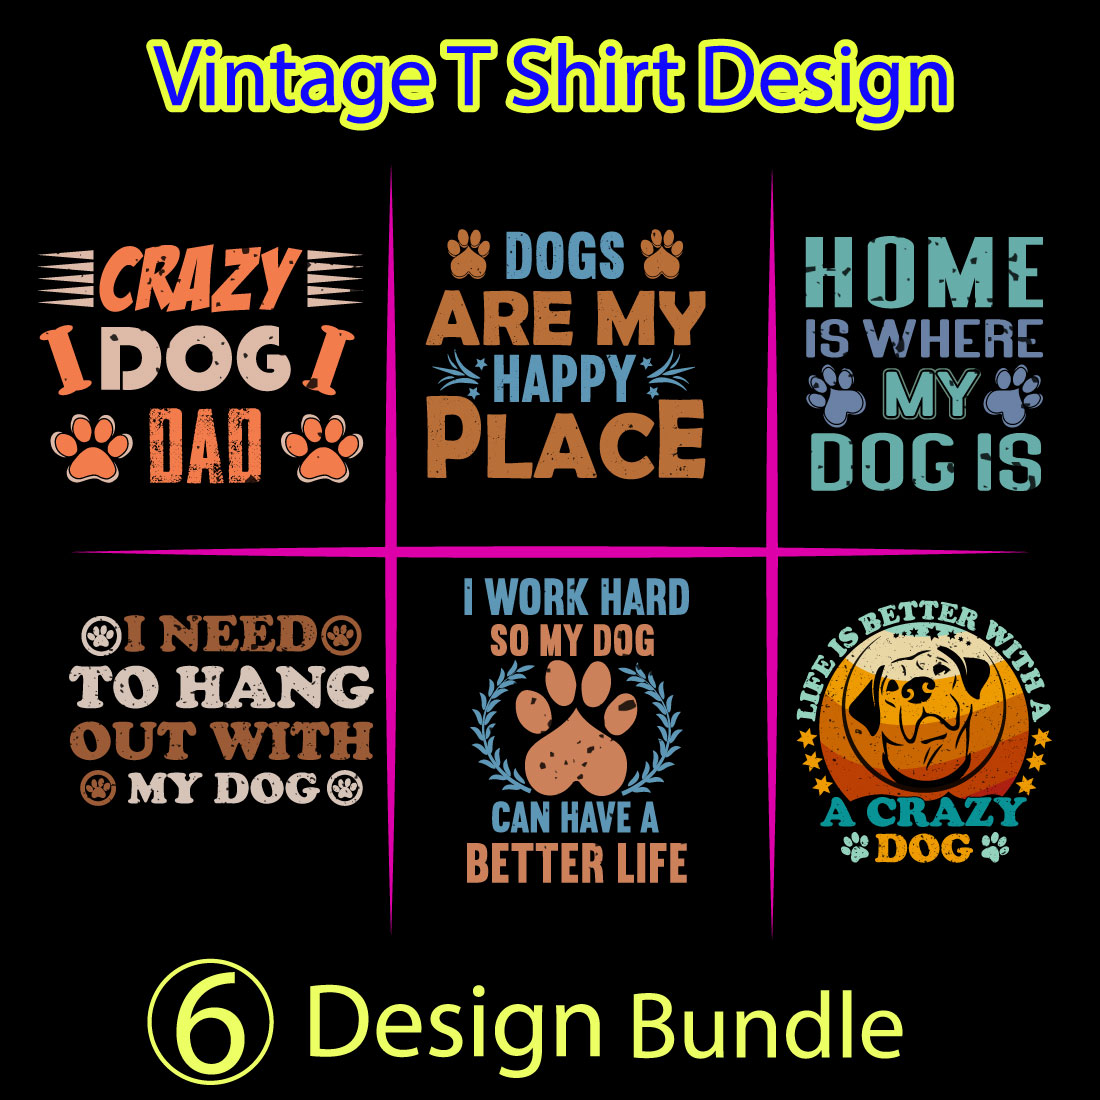 Dog-t-shirt-design-bundle cover image.